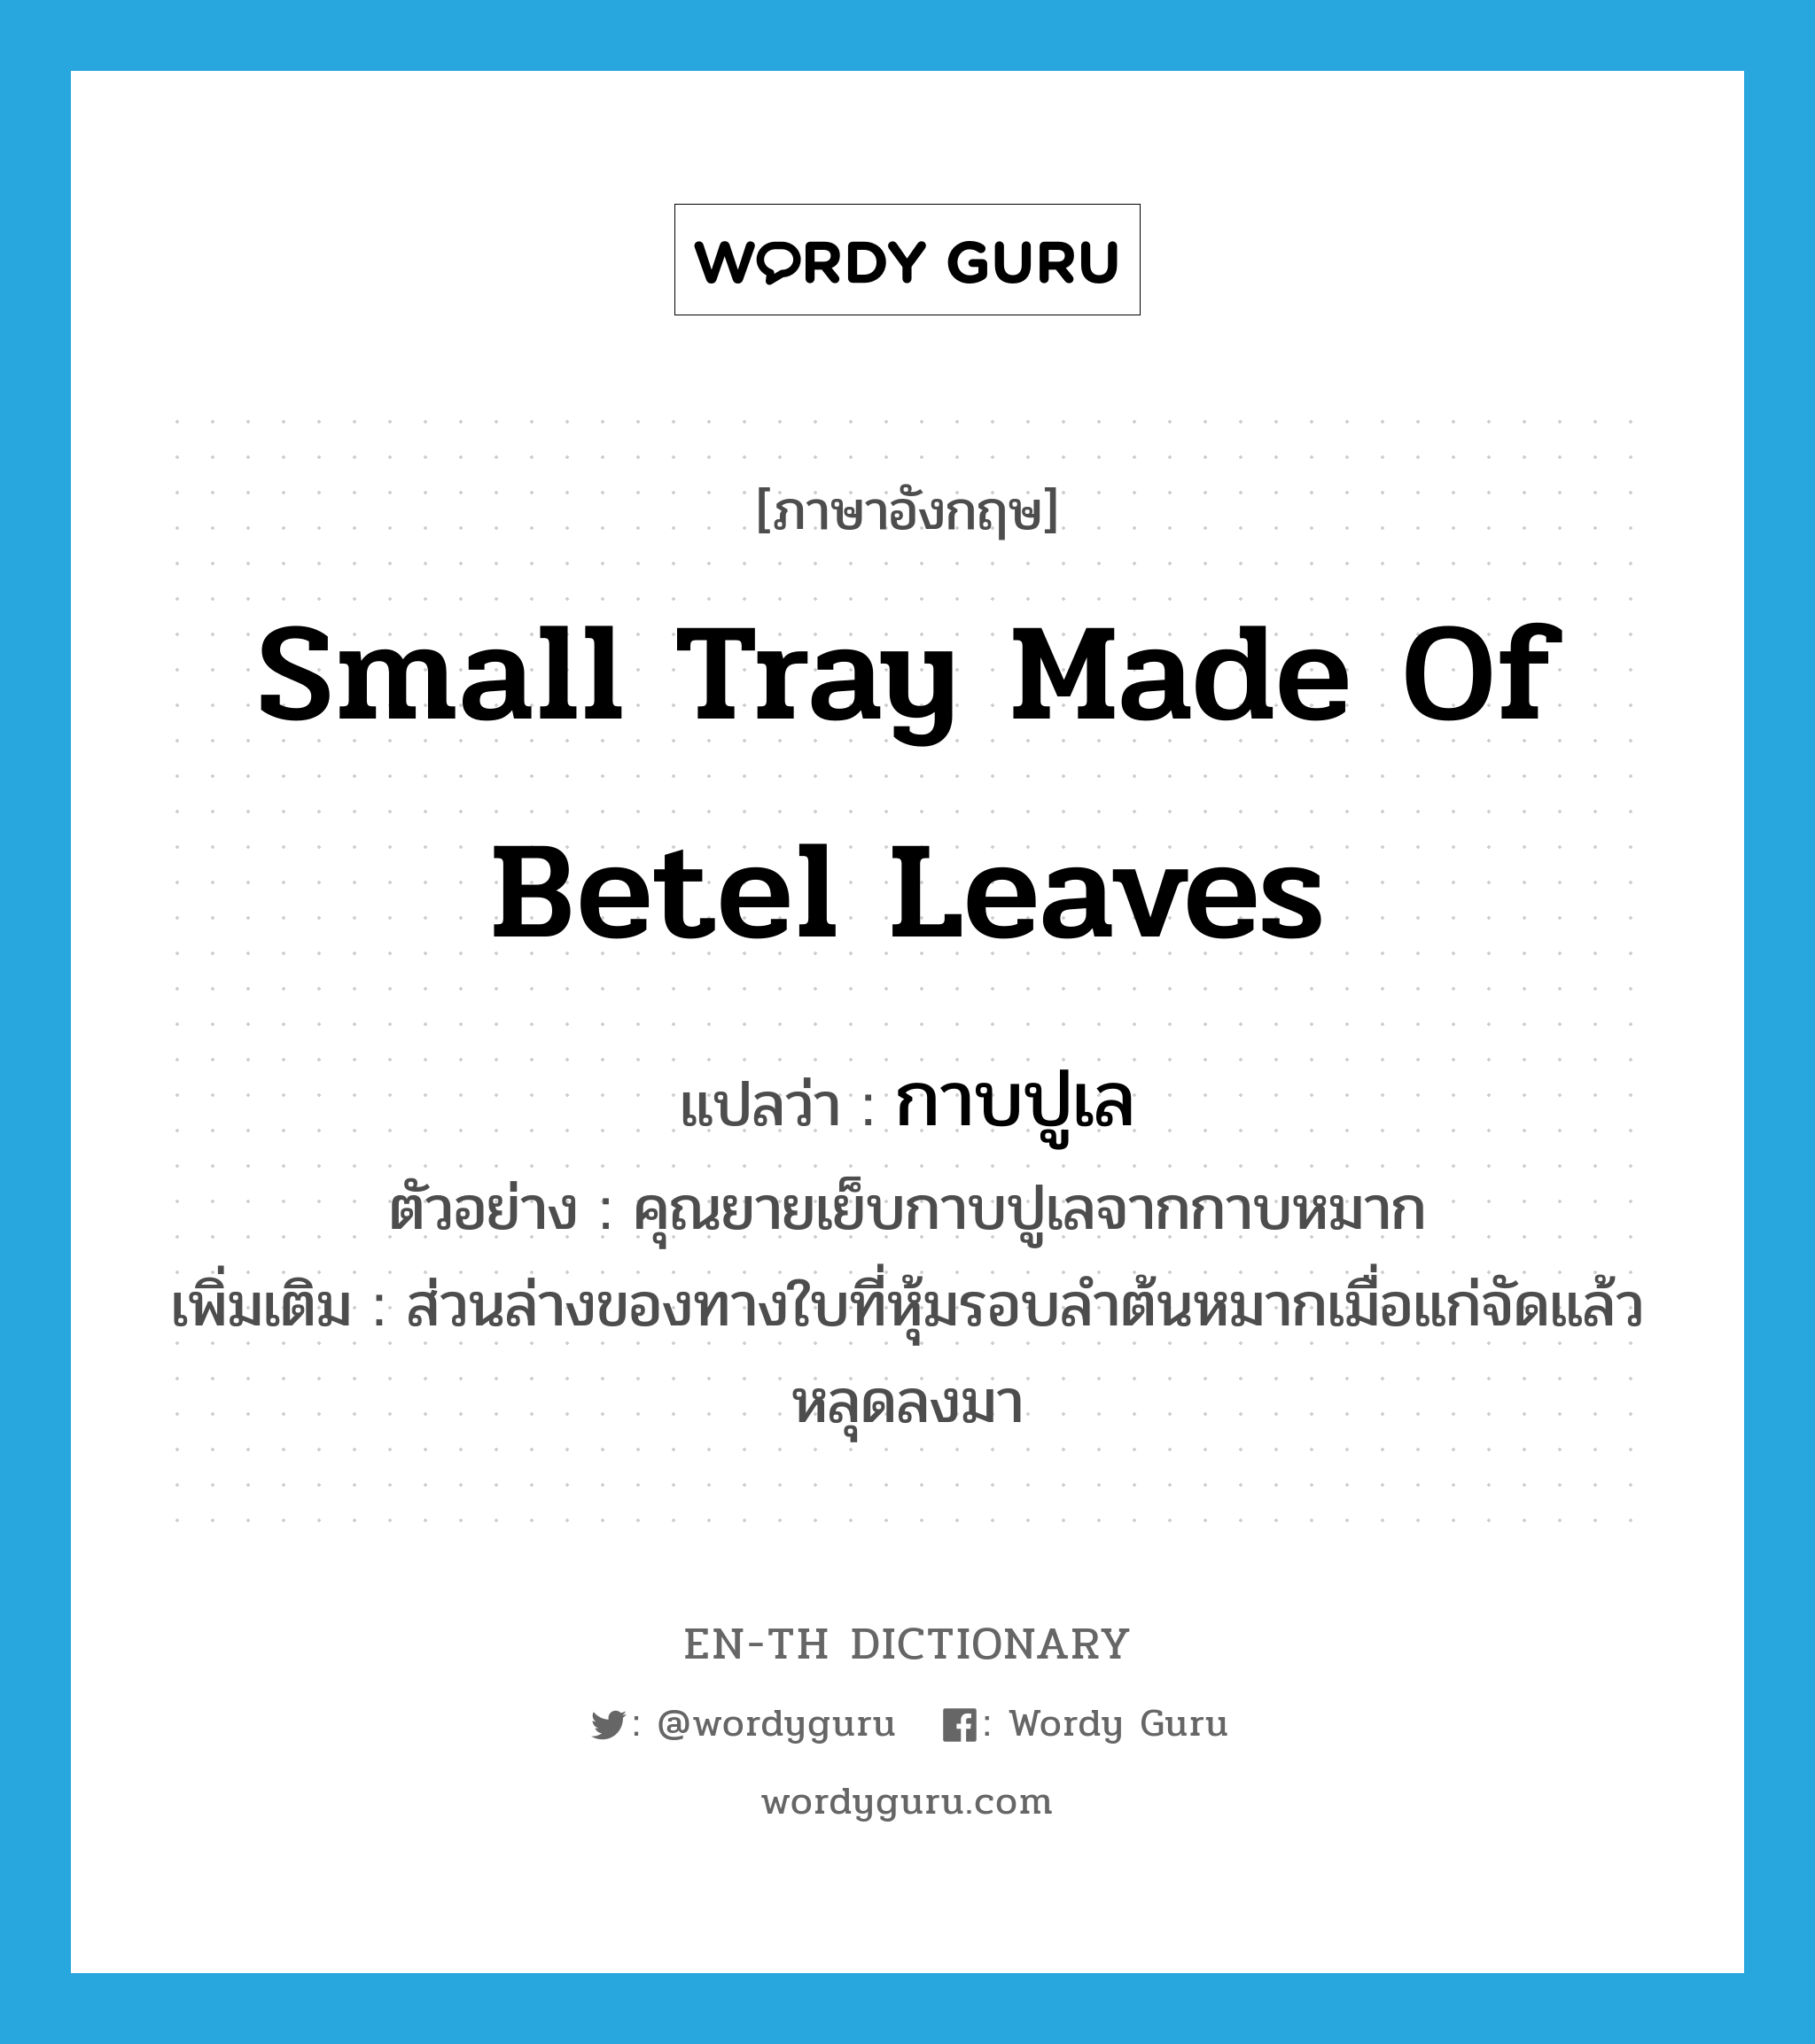 กาบปูเล ภาษาอังกฤษ?, คำศัพท์ภาษาอังกฤษ กาบปูเล แปลว่า small tray made of betel leaves ประเภท N ตัวอย่าง คุณยายเย็บกาบปูเลจากกาบหมาก เพิ่มเติม ส่วนล่างของทางใบที่หุ้มรอบลำต้นหมากเมื่อแก่จัดแล้วหลุดลงมา หมวด N